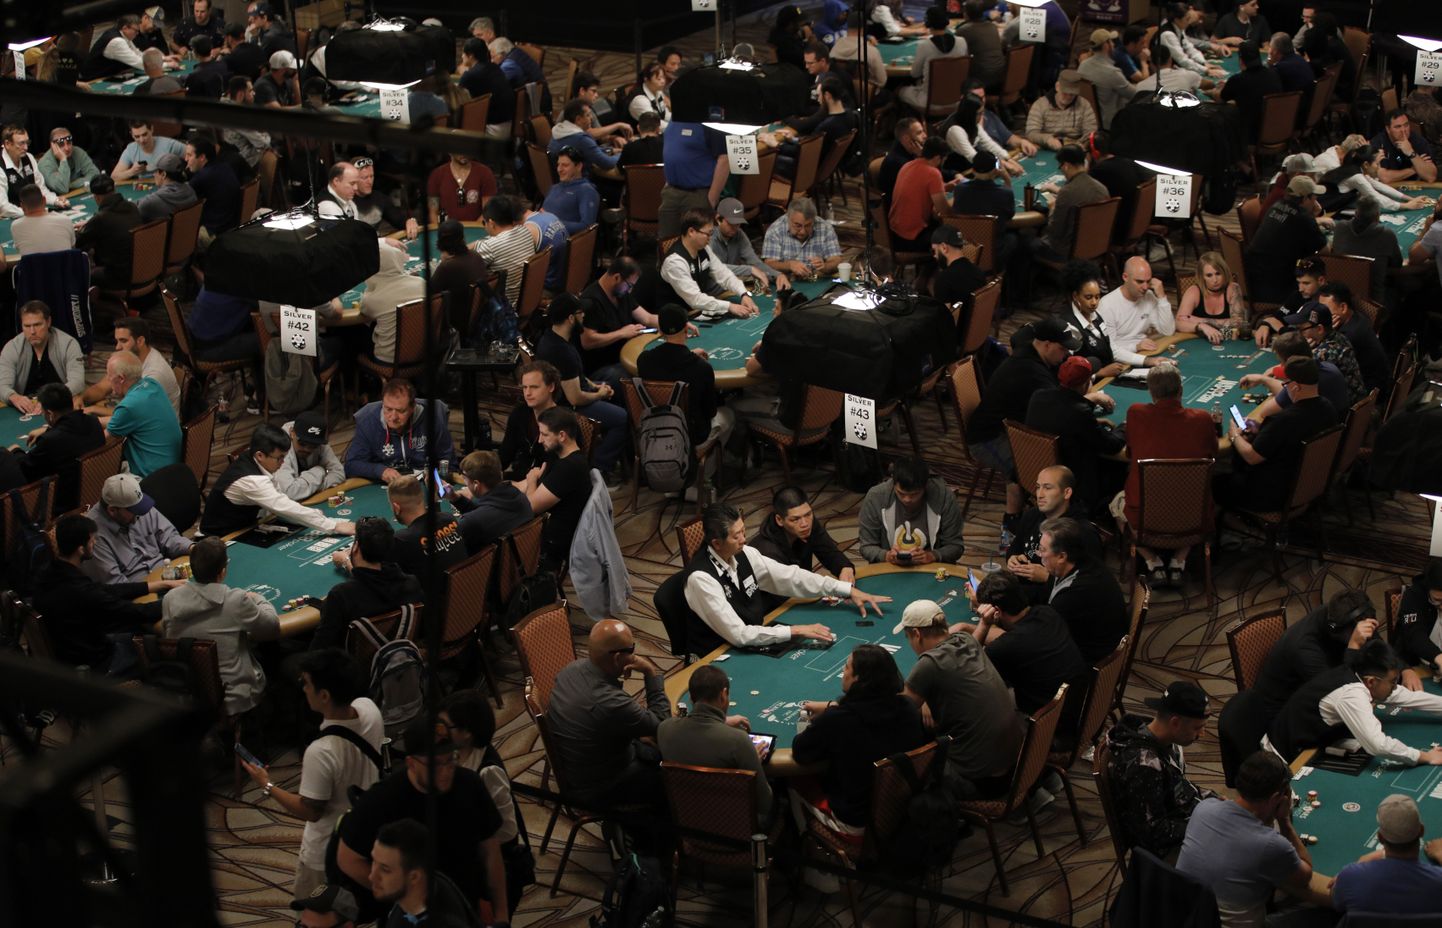 Inimesed mängimas No-Limit Texas Hold'emit 24. juunil Las Vegases ühel pokkeriturniiril.